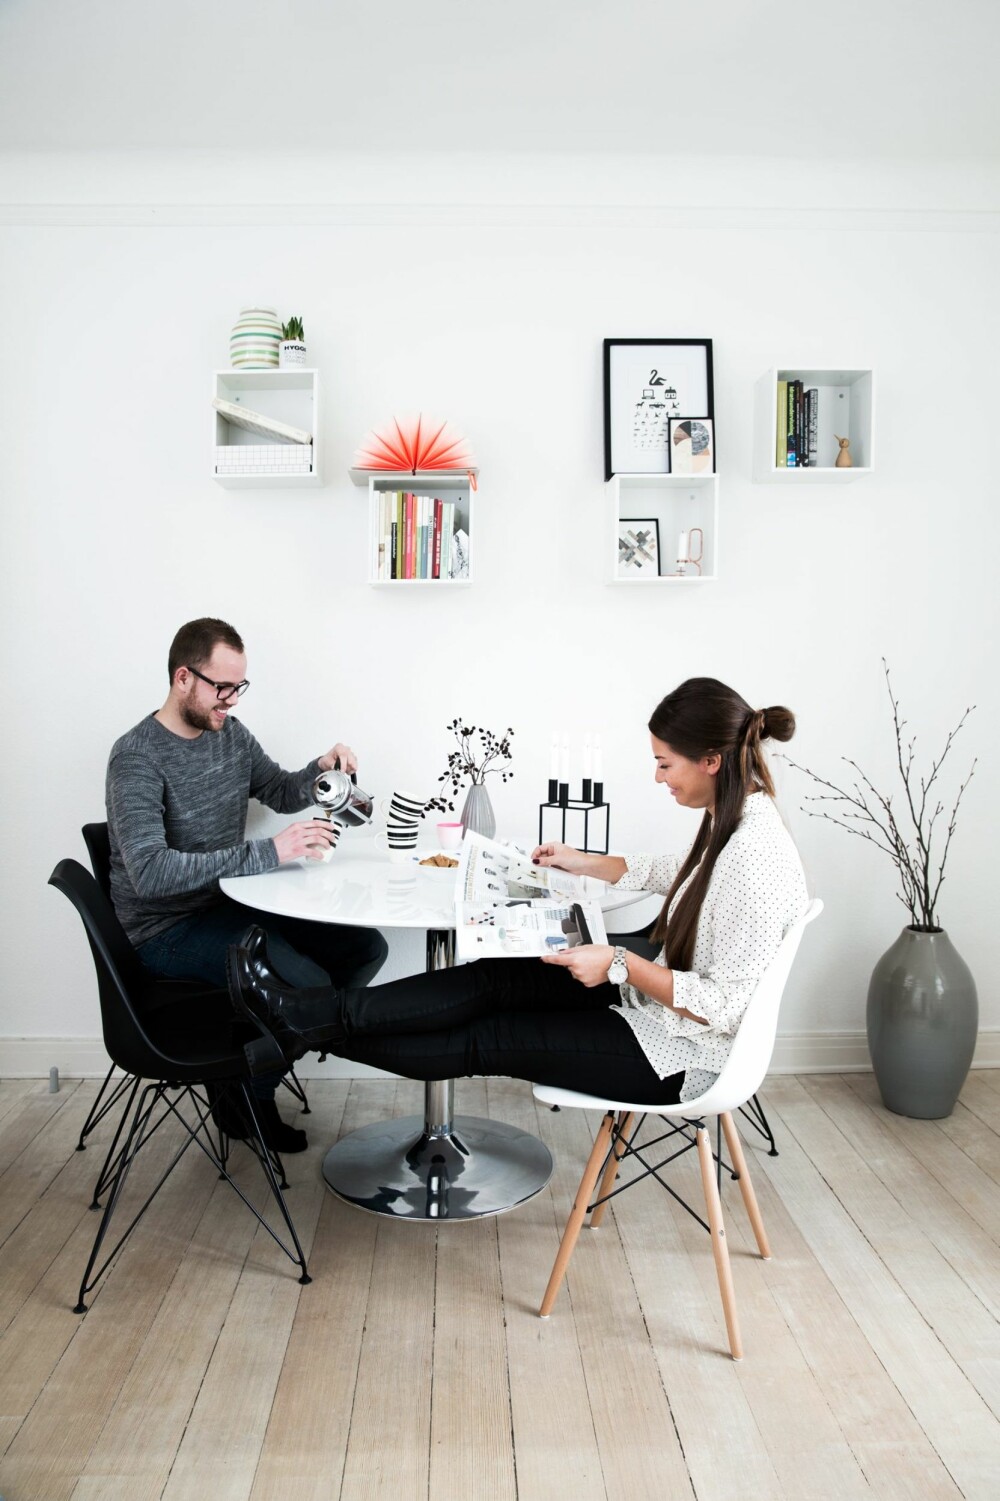 SMART LØSNING: Cecilie og Asger ved spisebordet fra Ikea. Stolene er fra biva.dk. Den hvite er fra Charles & Ray Eames, og er en klassiker de kan ha lenge. Enkle bokser på veggen gir et luftigere uttrykk enn skap eller reoler.